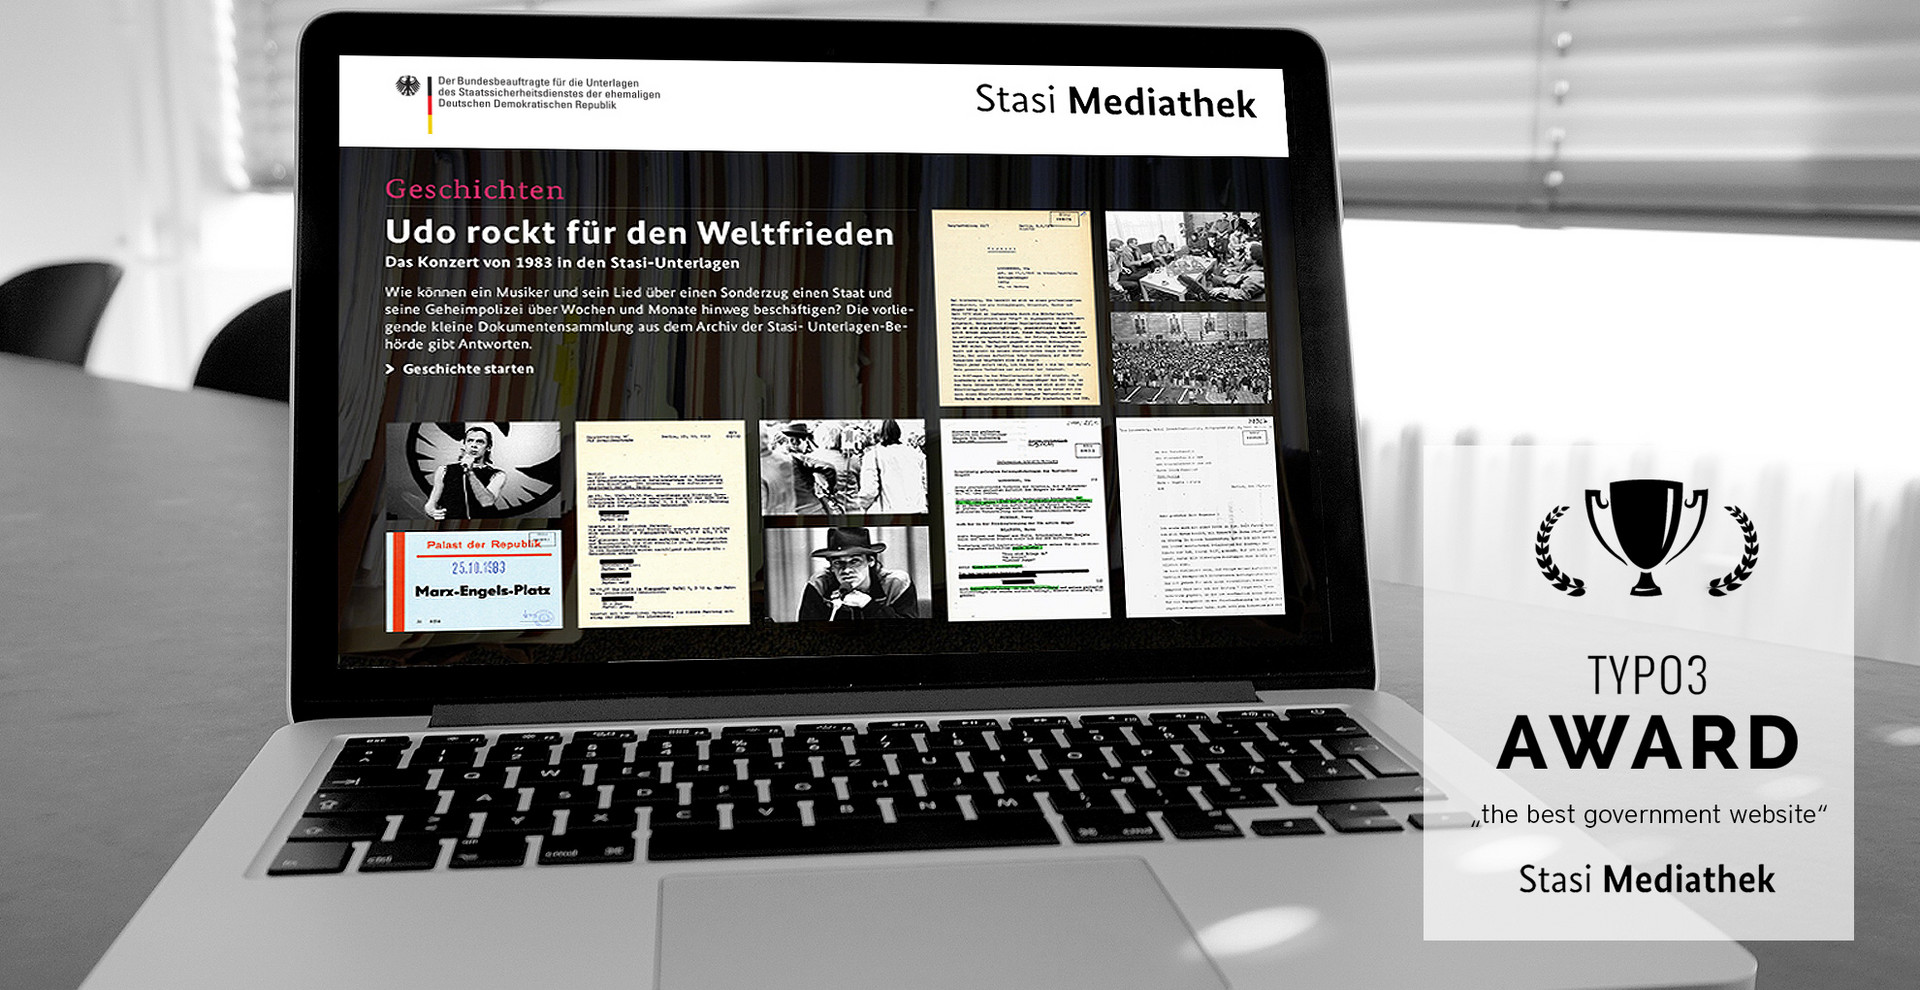 Stasi-Mediathek: TYPO3 Award